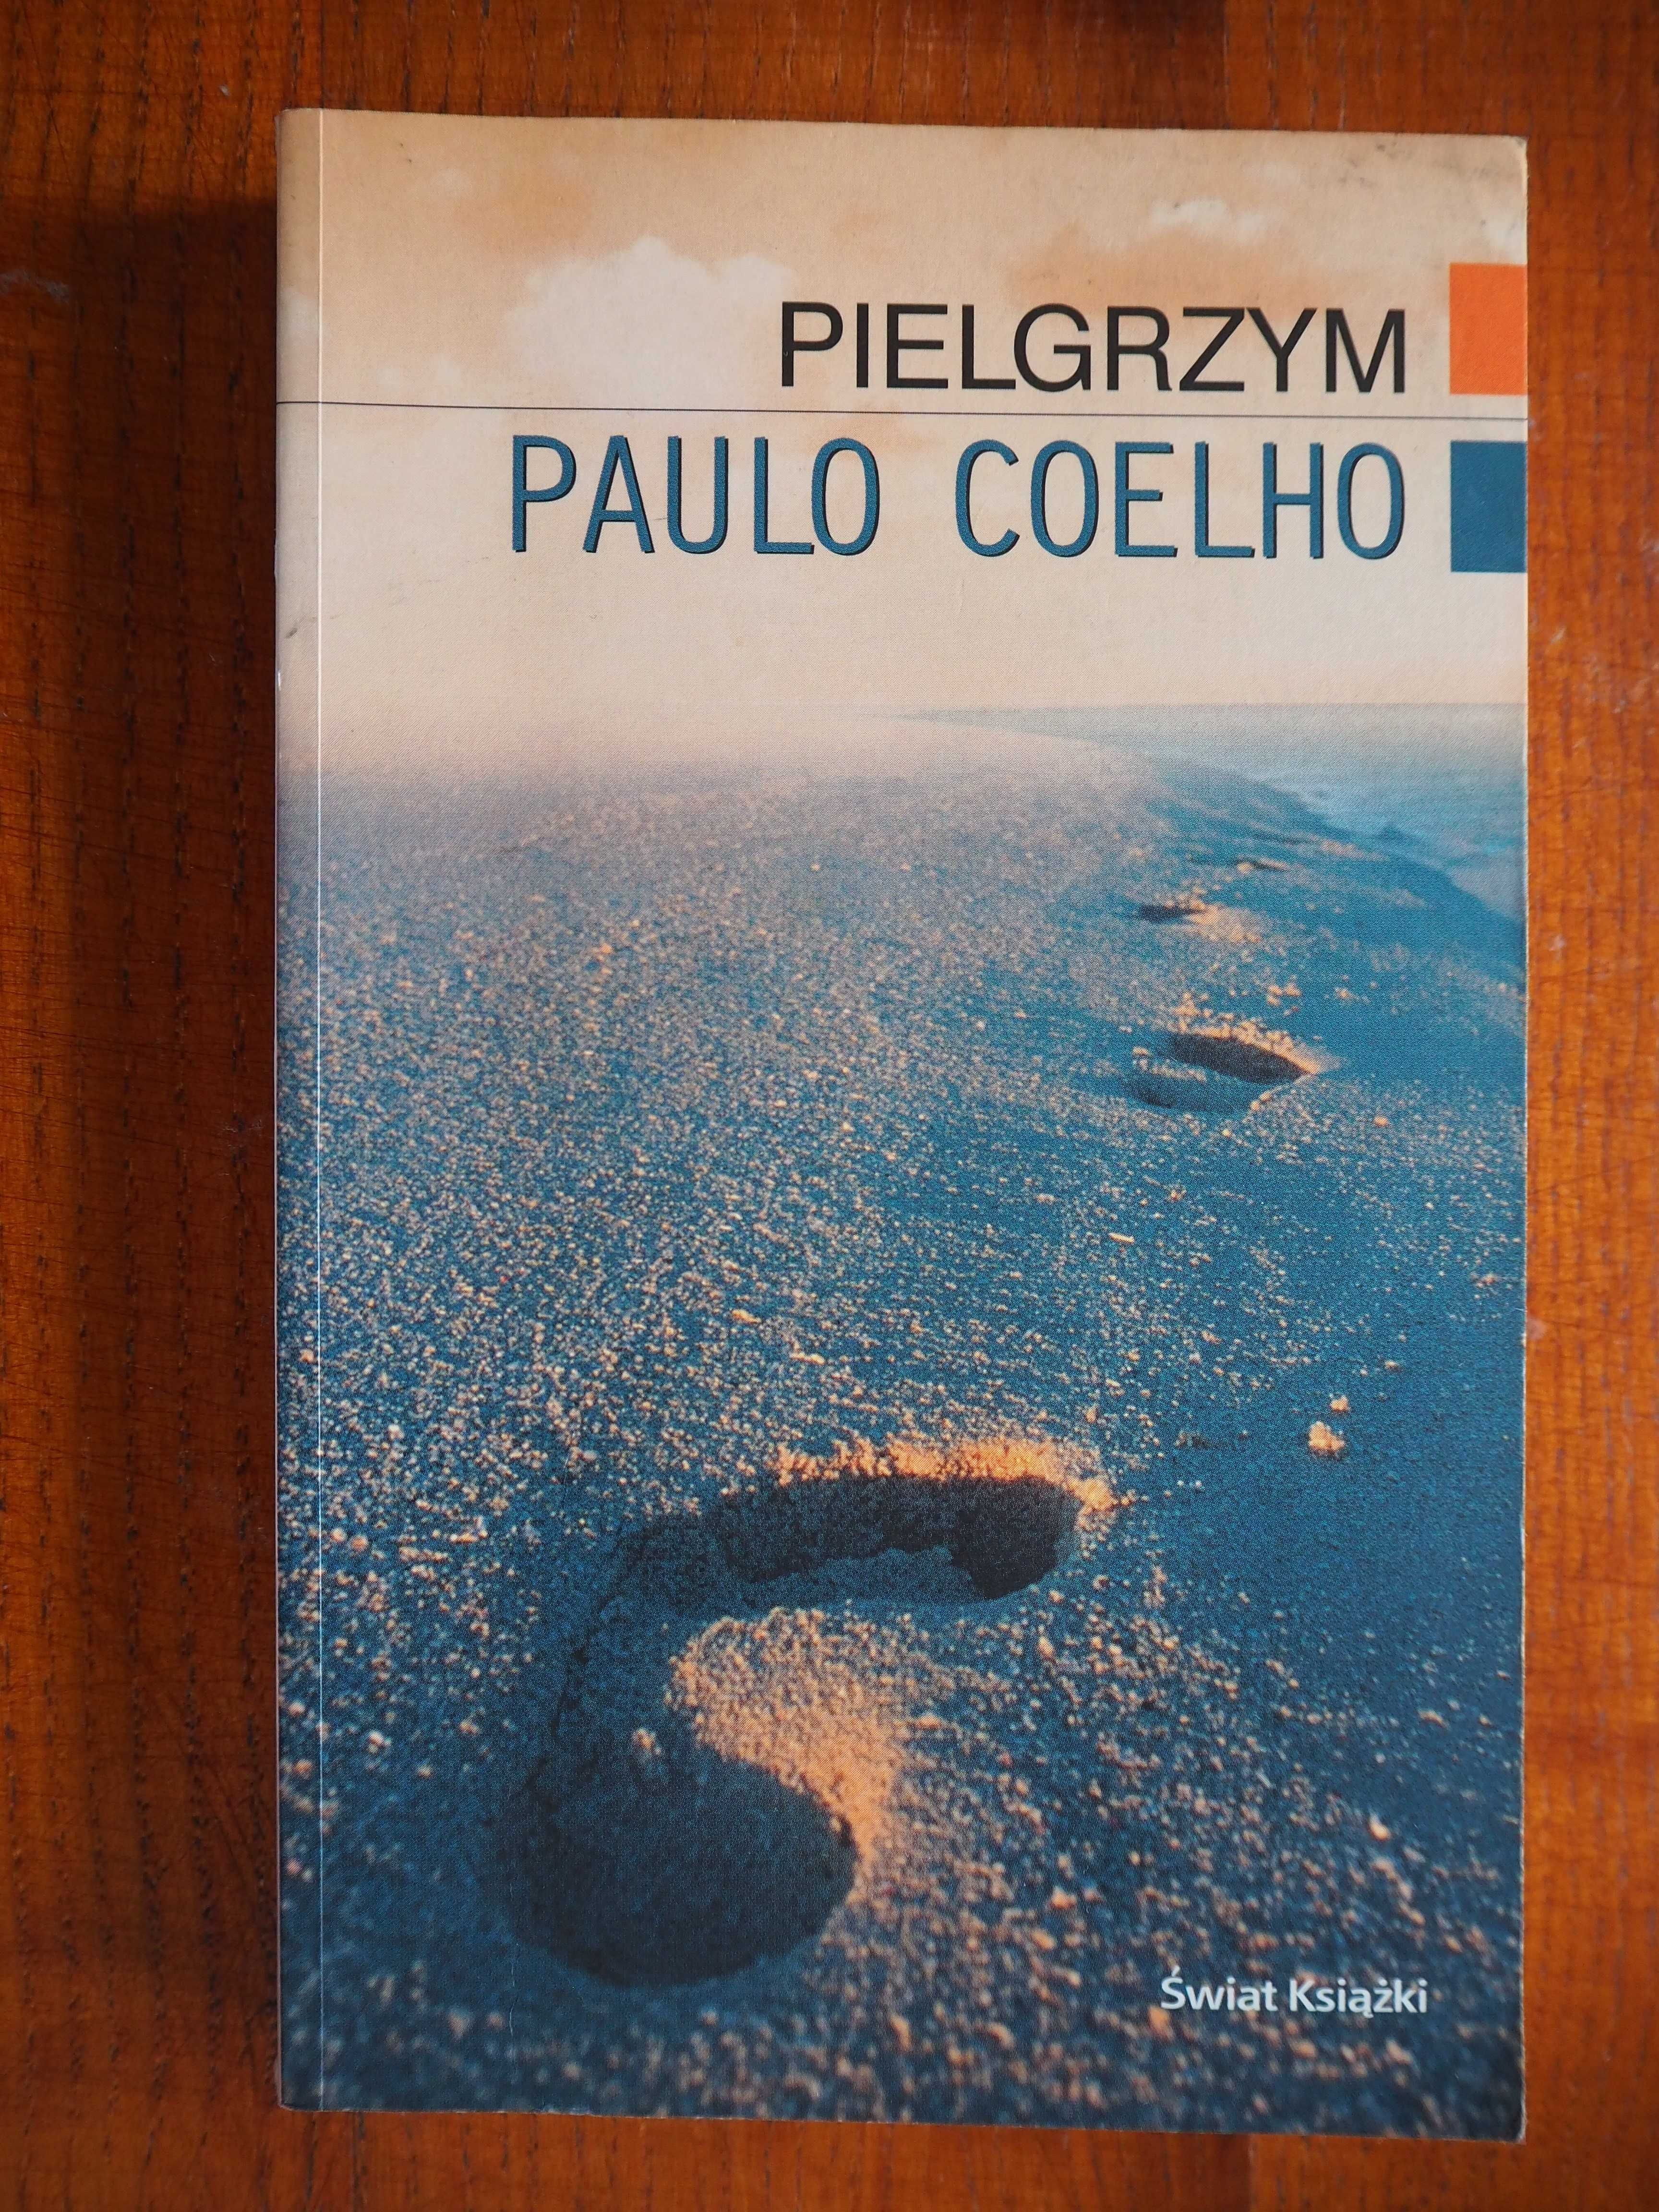 Paulo Coelho - Pielgrzym